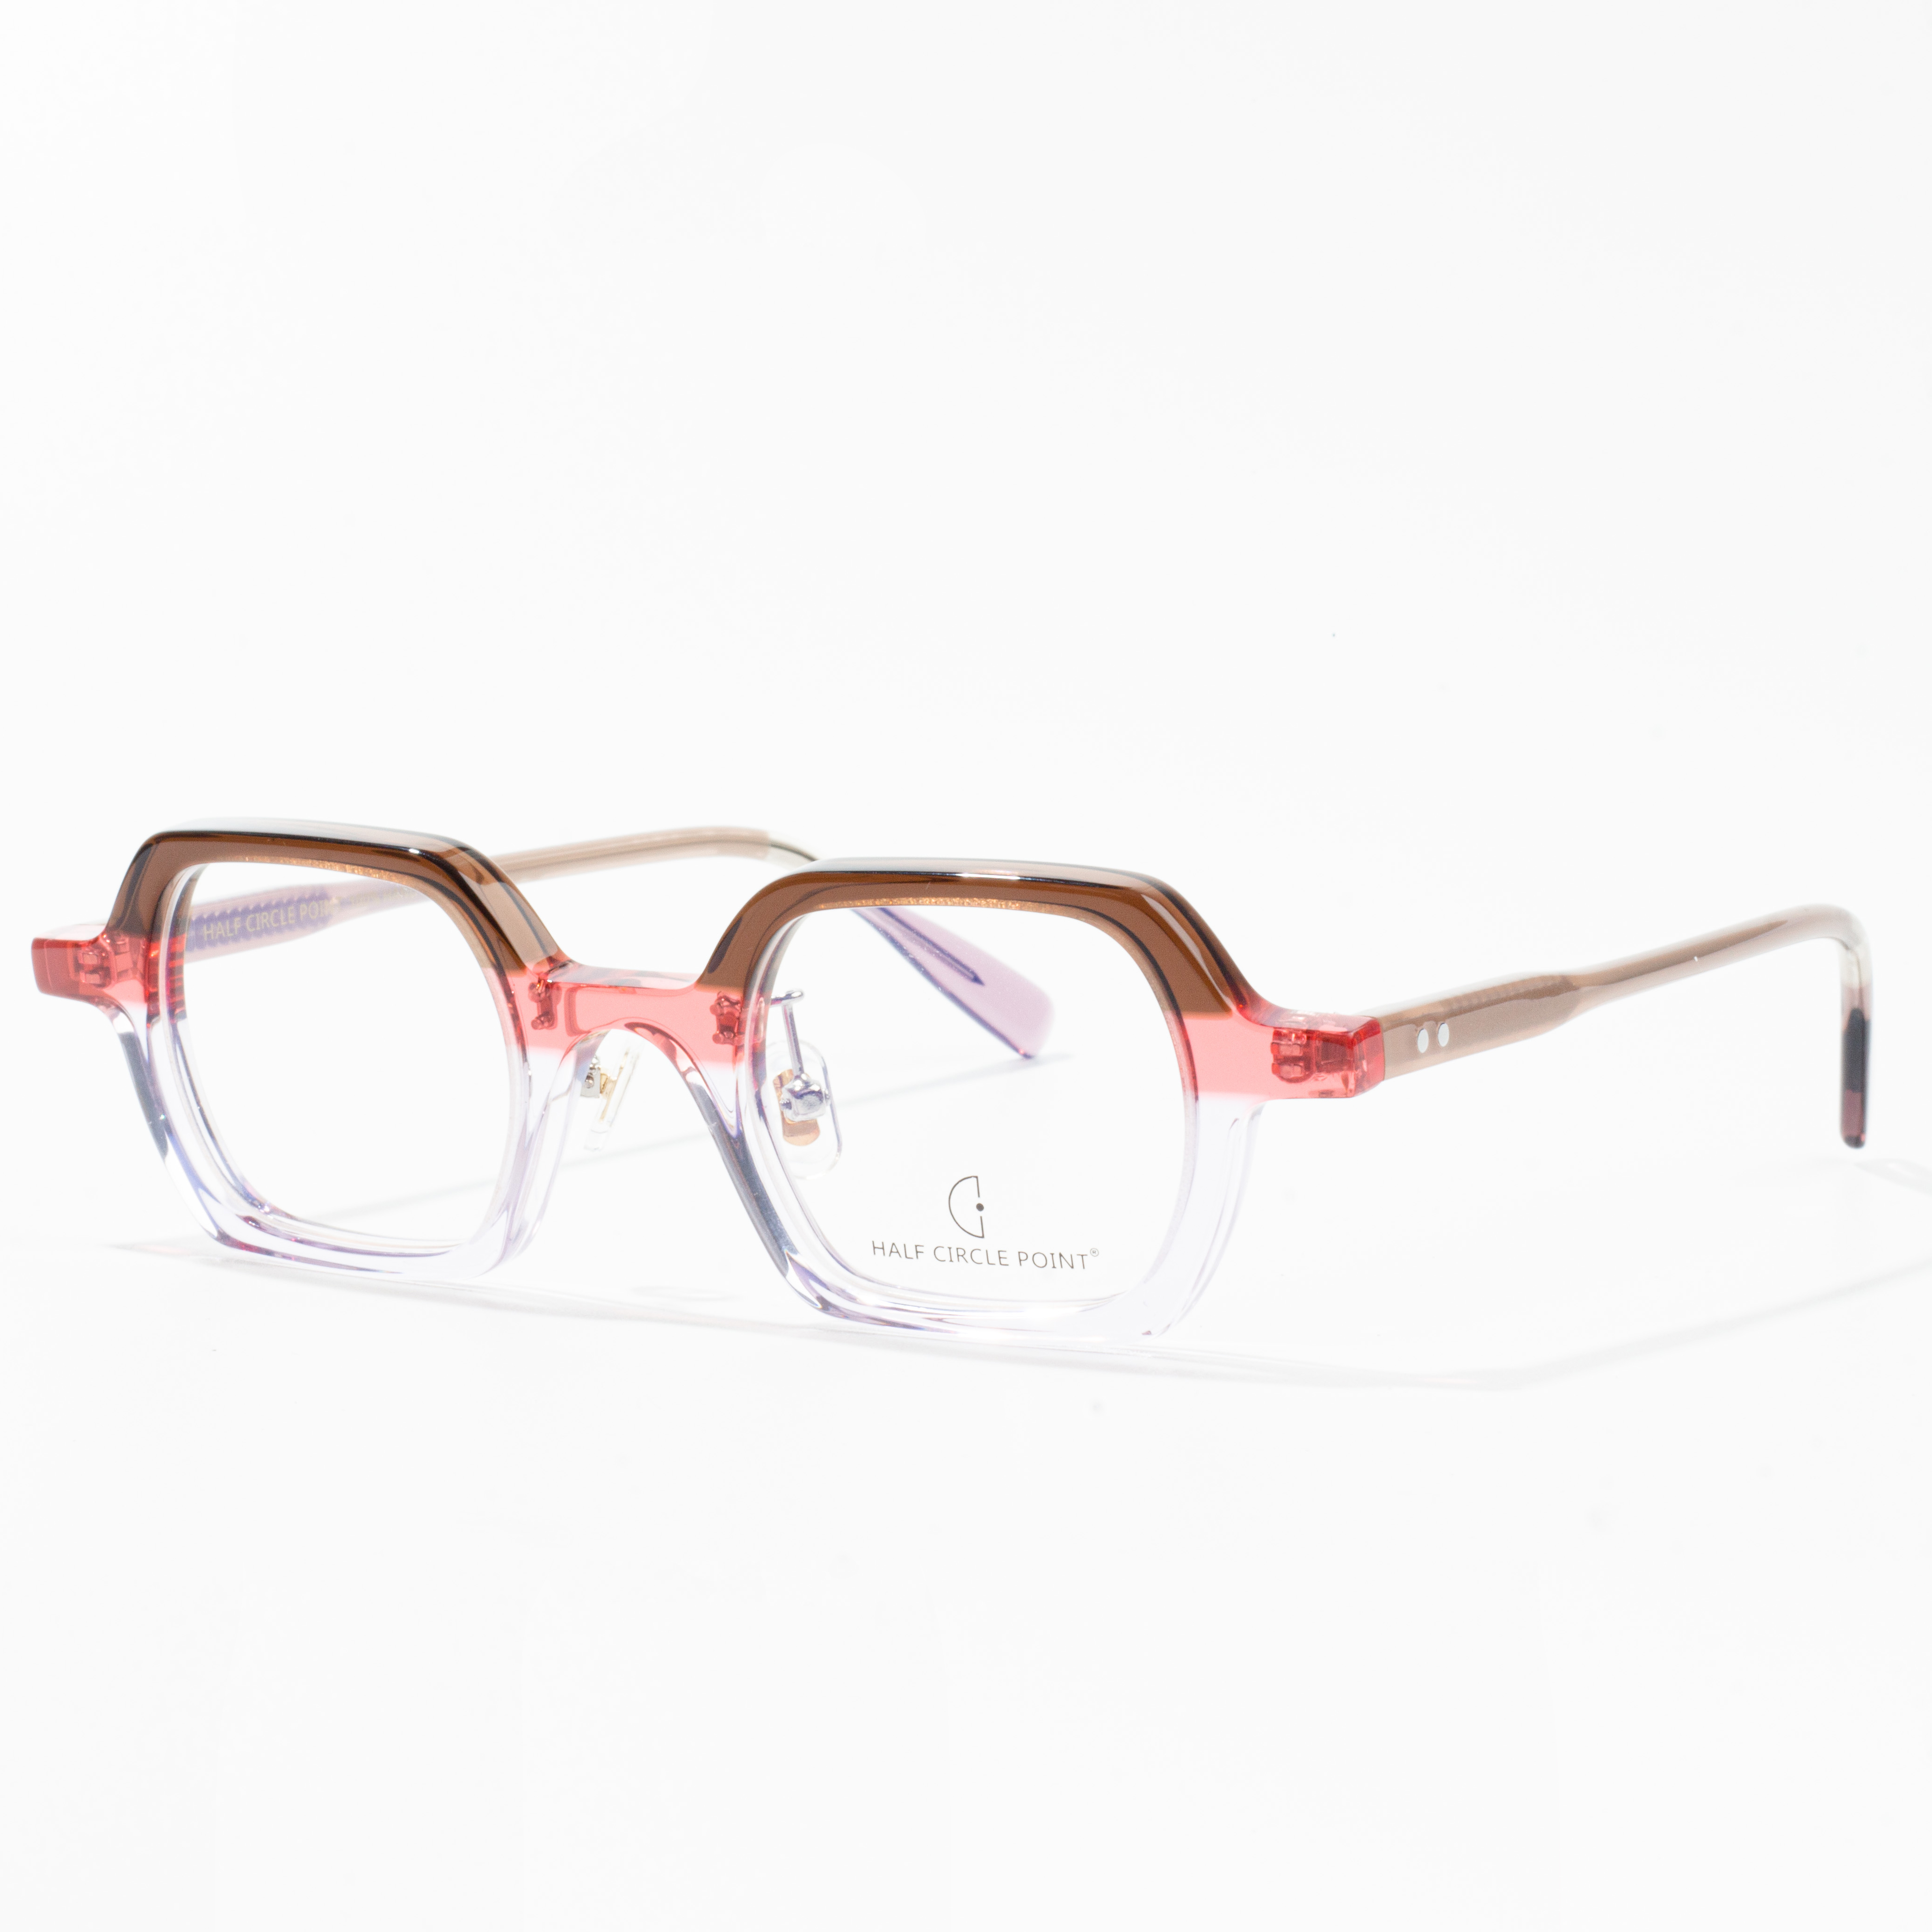 acetate frames for glasses